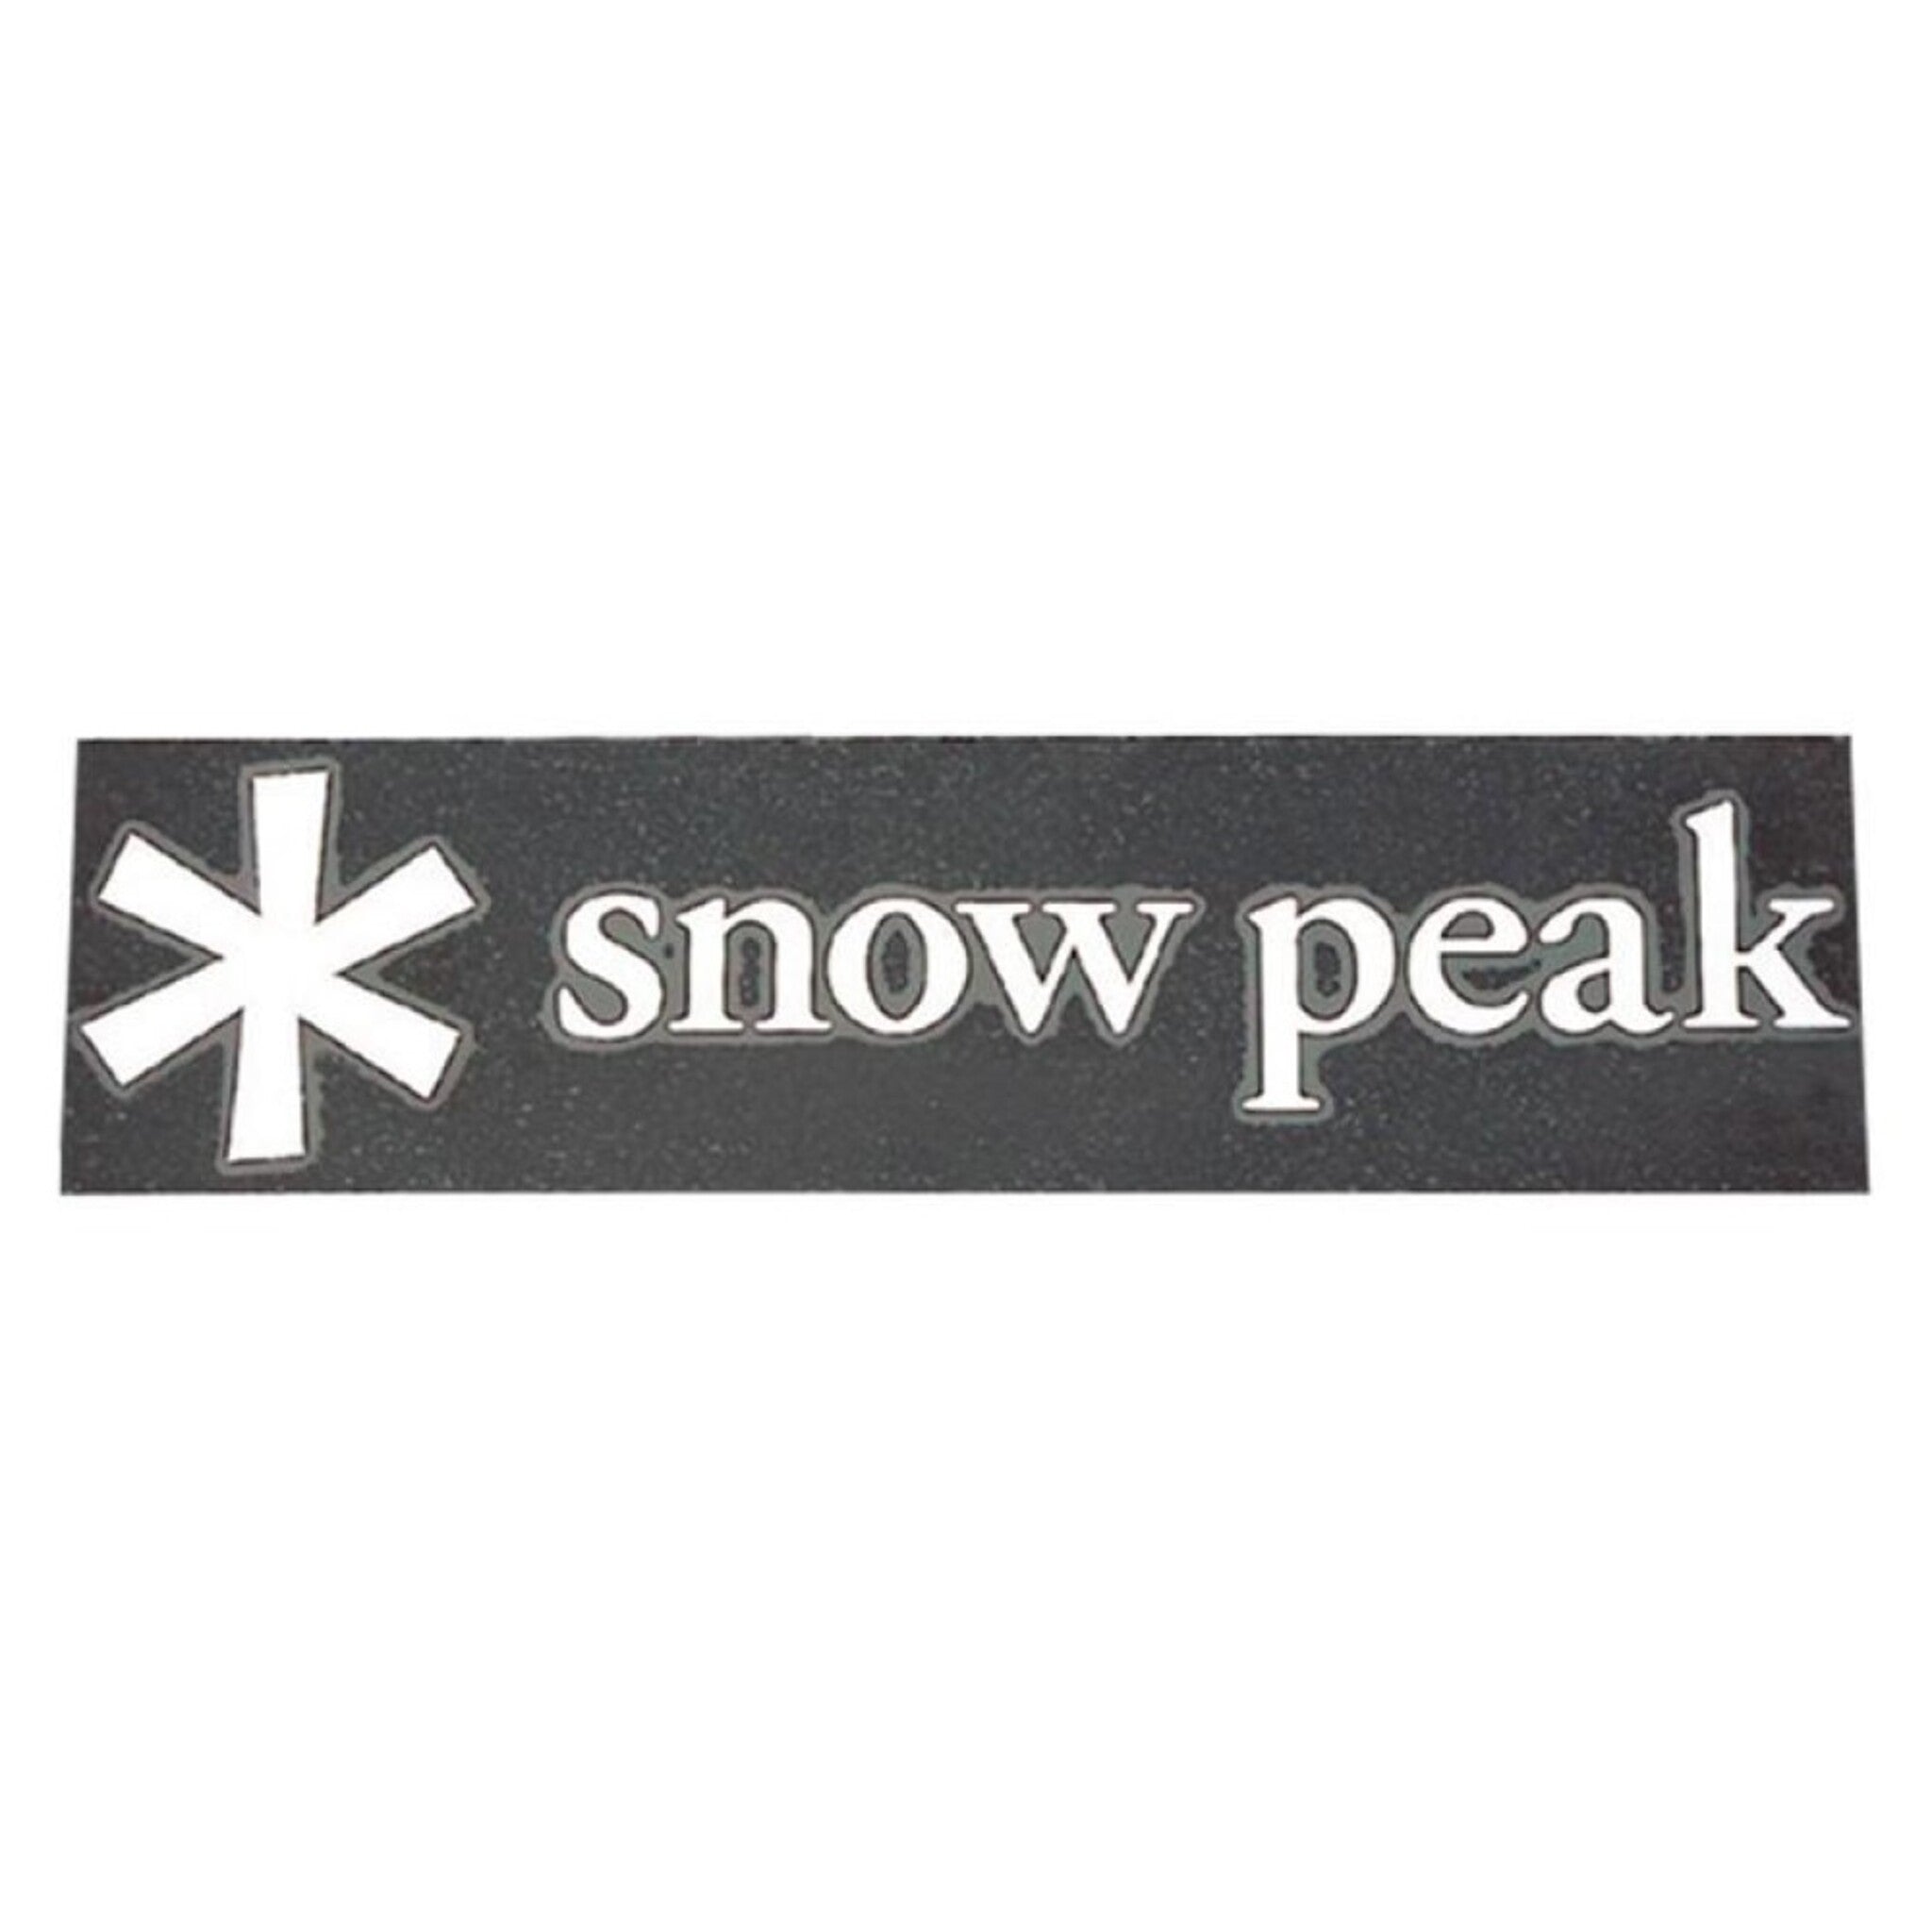 SnowPeak 汽車貼紙 小 NV-006